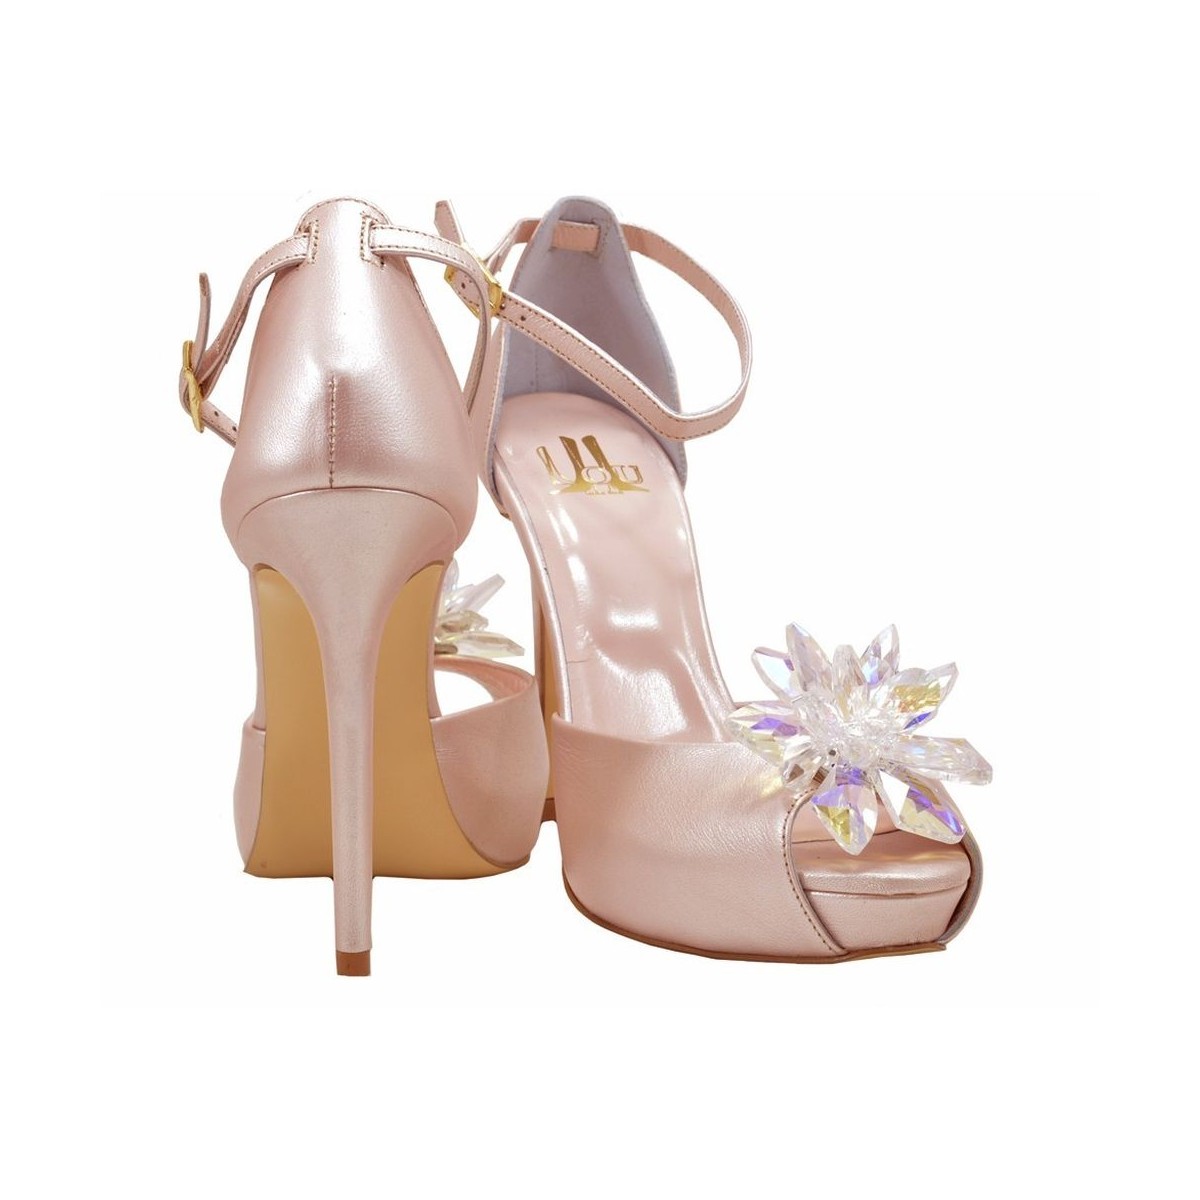 Lou bridal-evening sandals Cinderella